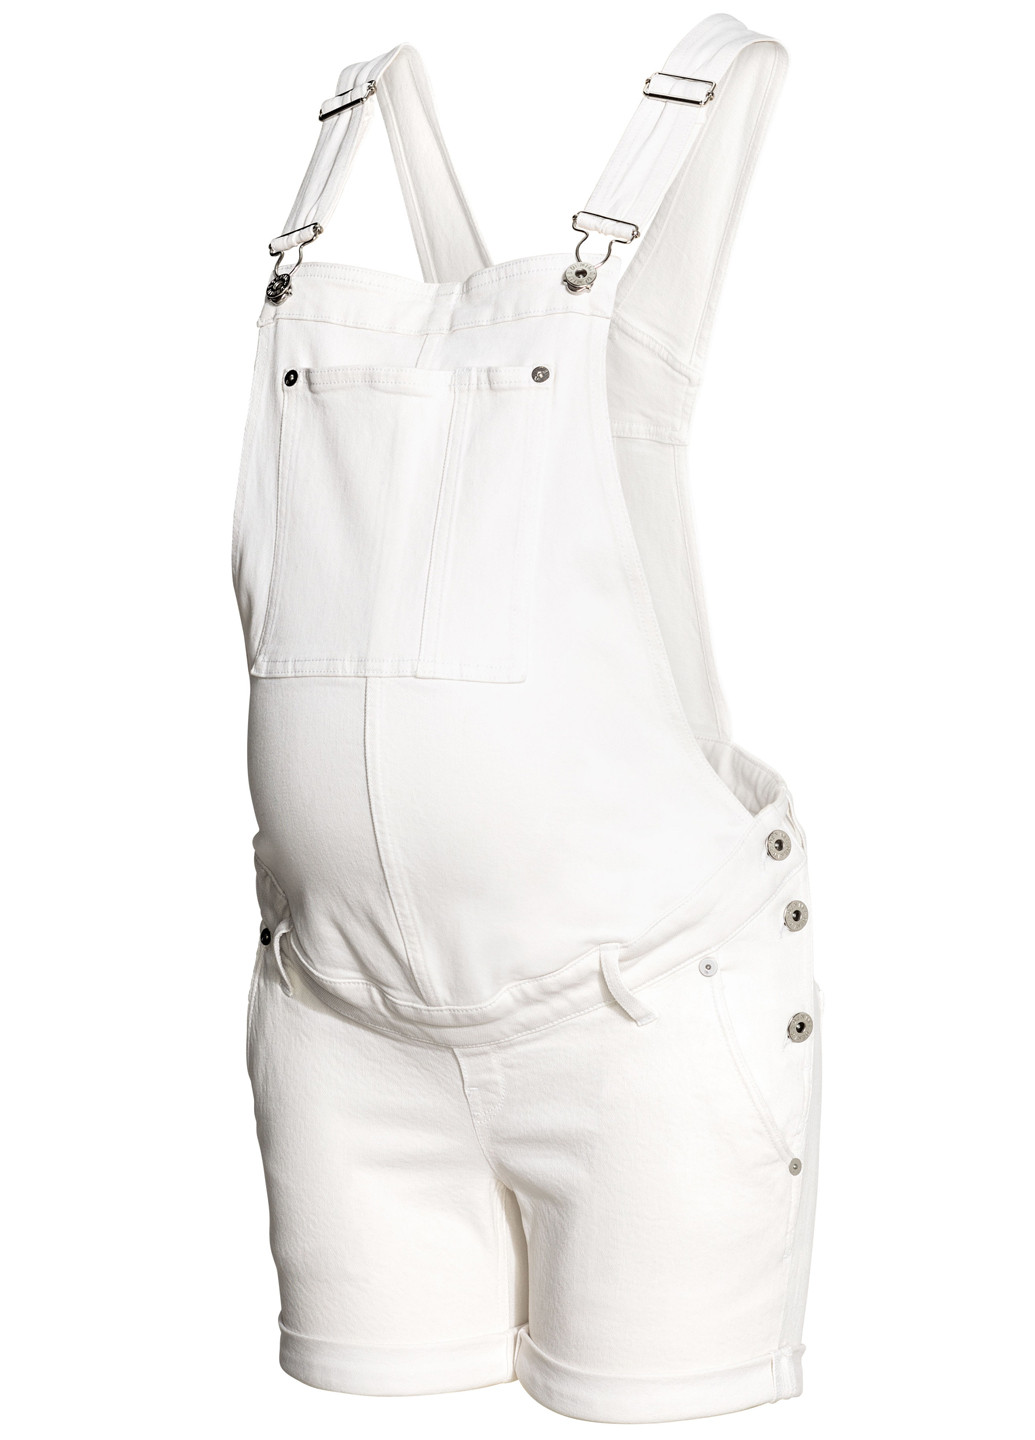 Комбинезон для беременных H&M комбинезон-шорты однотонный белый денил хлопок